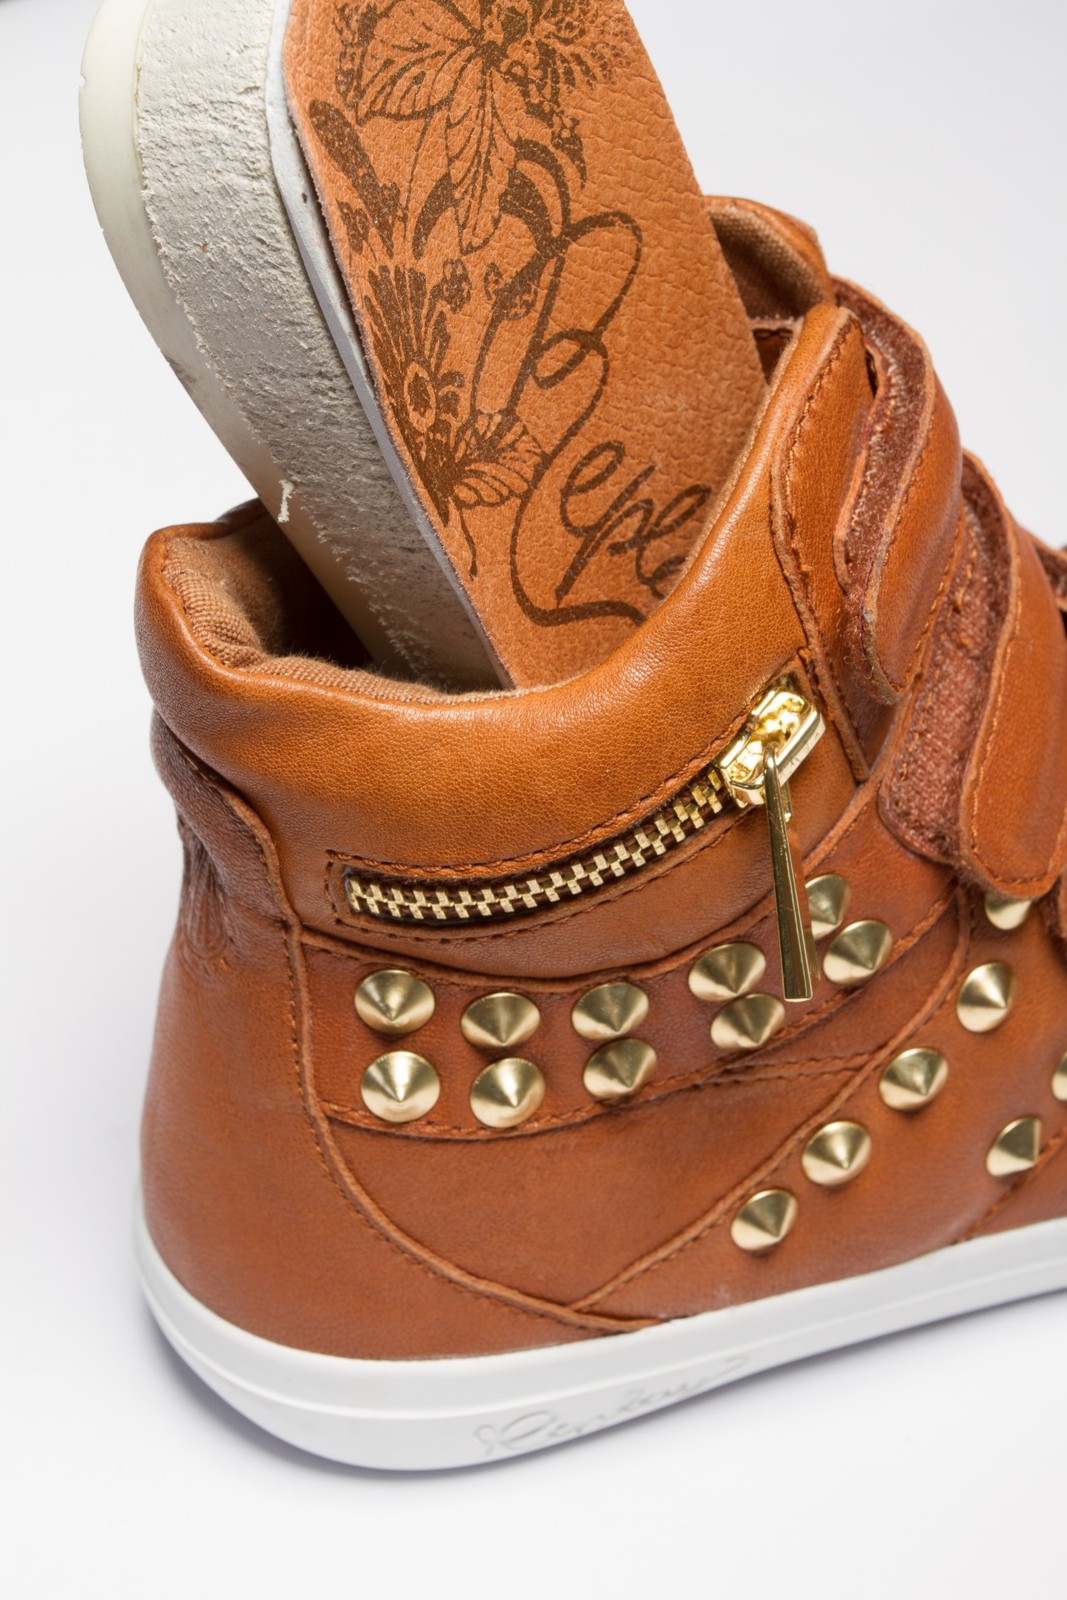 Replay barna sneaker arany szegecsekkel 2013.4.12 #39495 fotója